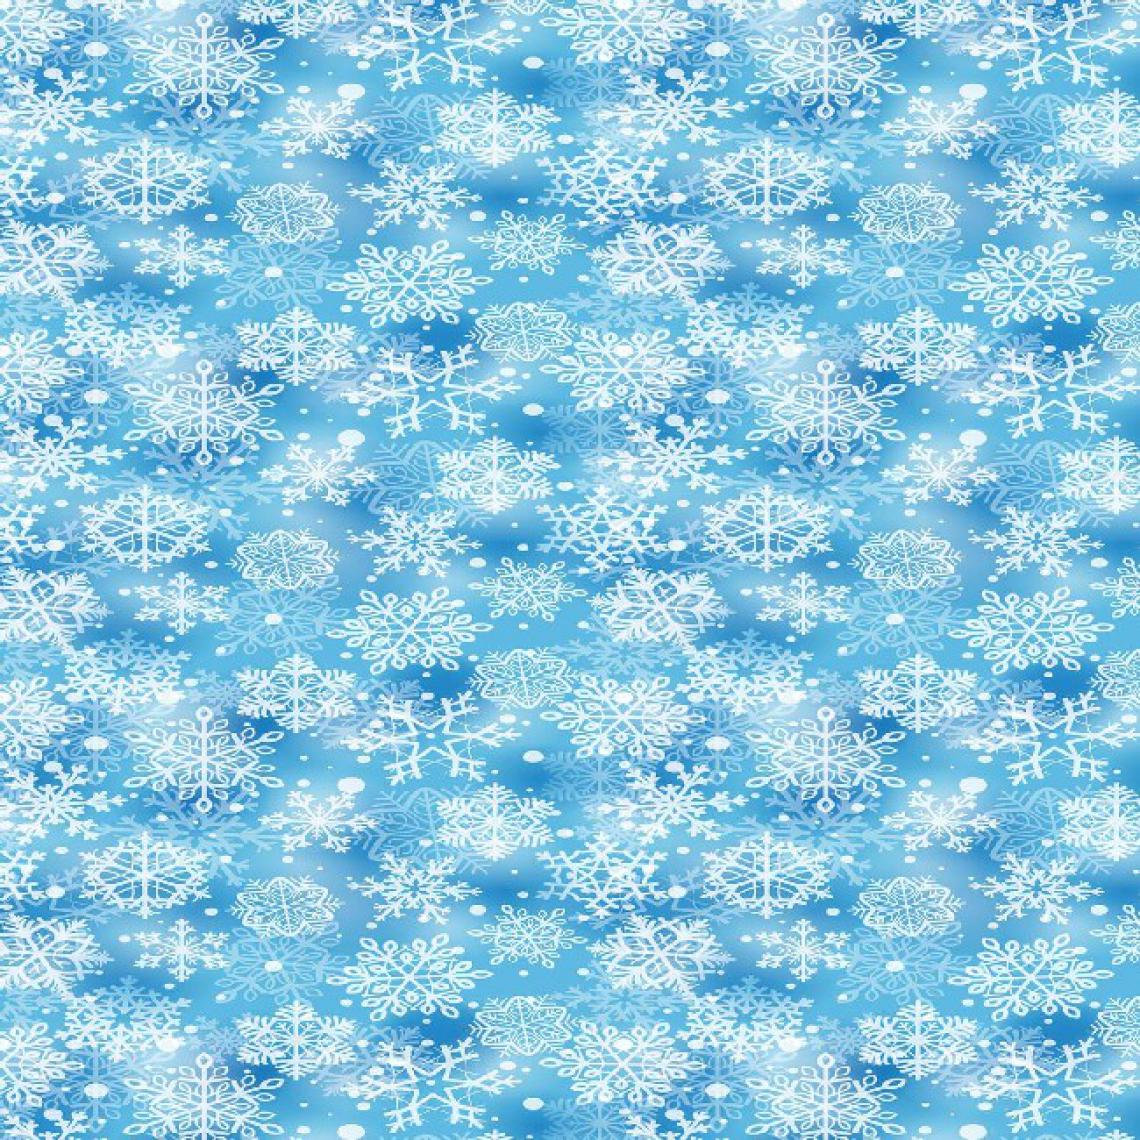 Homemania - HOMEMANIA Tapis Imprimé Snow And Stars - Géométrique - Décoration de Maison - Antidérapant - Pour Salon, séjour, chambre à coucher - Multicolore en Polyester, Coton, 80 x 150 cm - Tapis